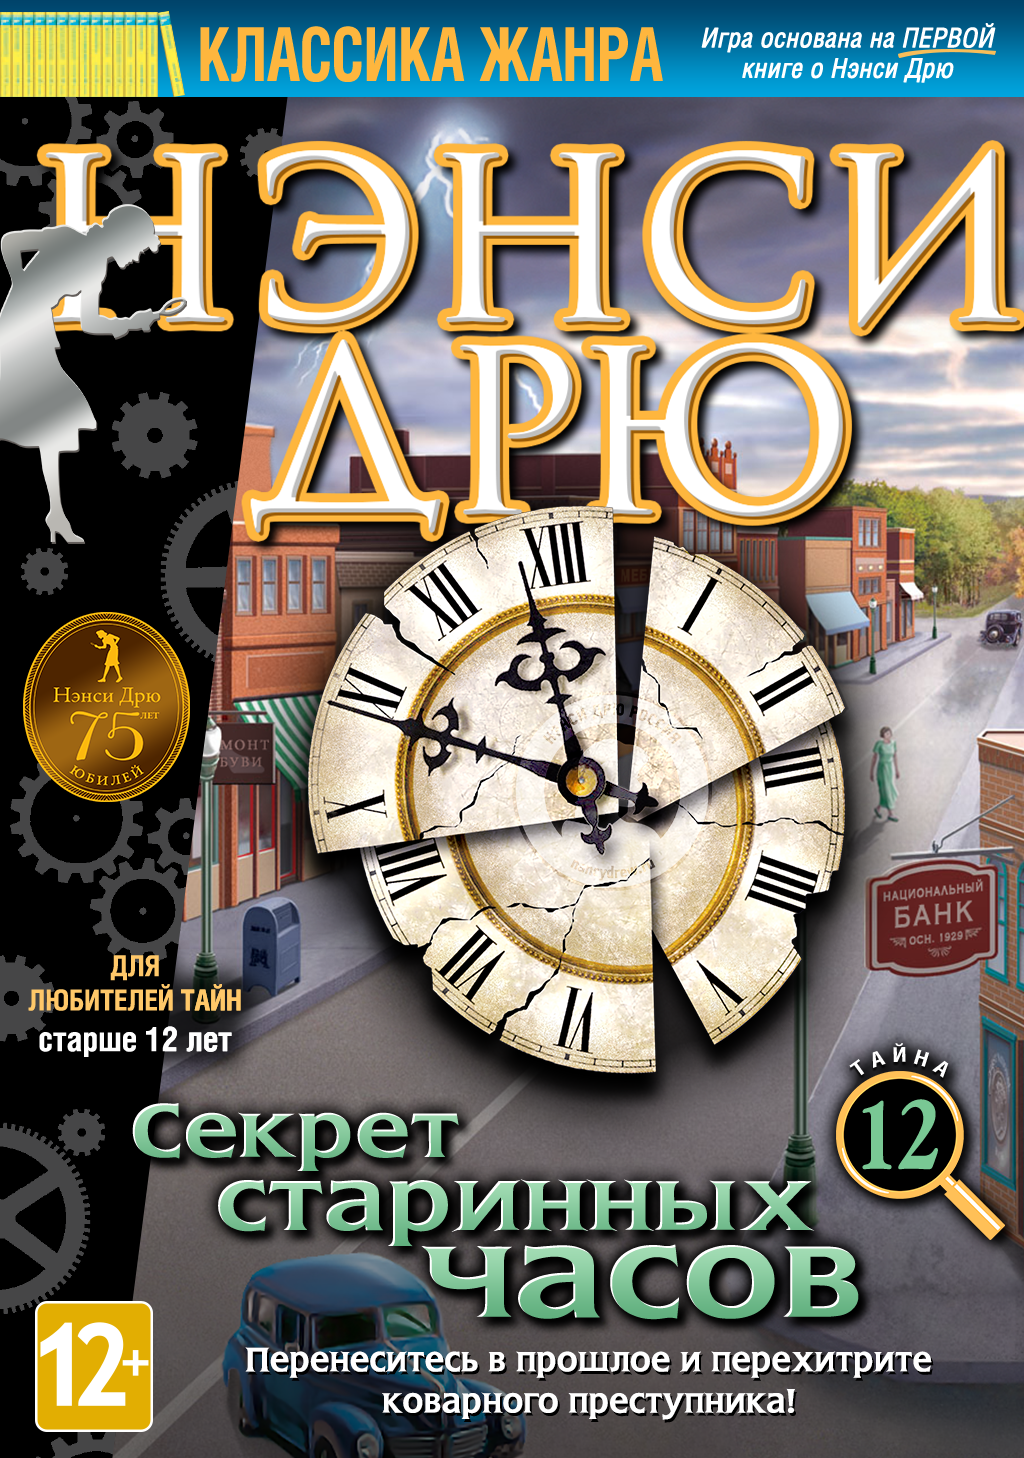 Тайна старых часов. Секрет старинных часов» (Secret of the old Clock) — 2005 год.